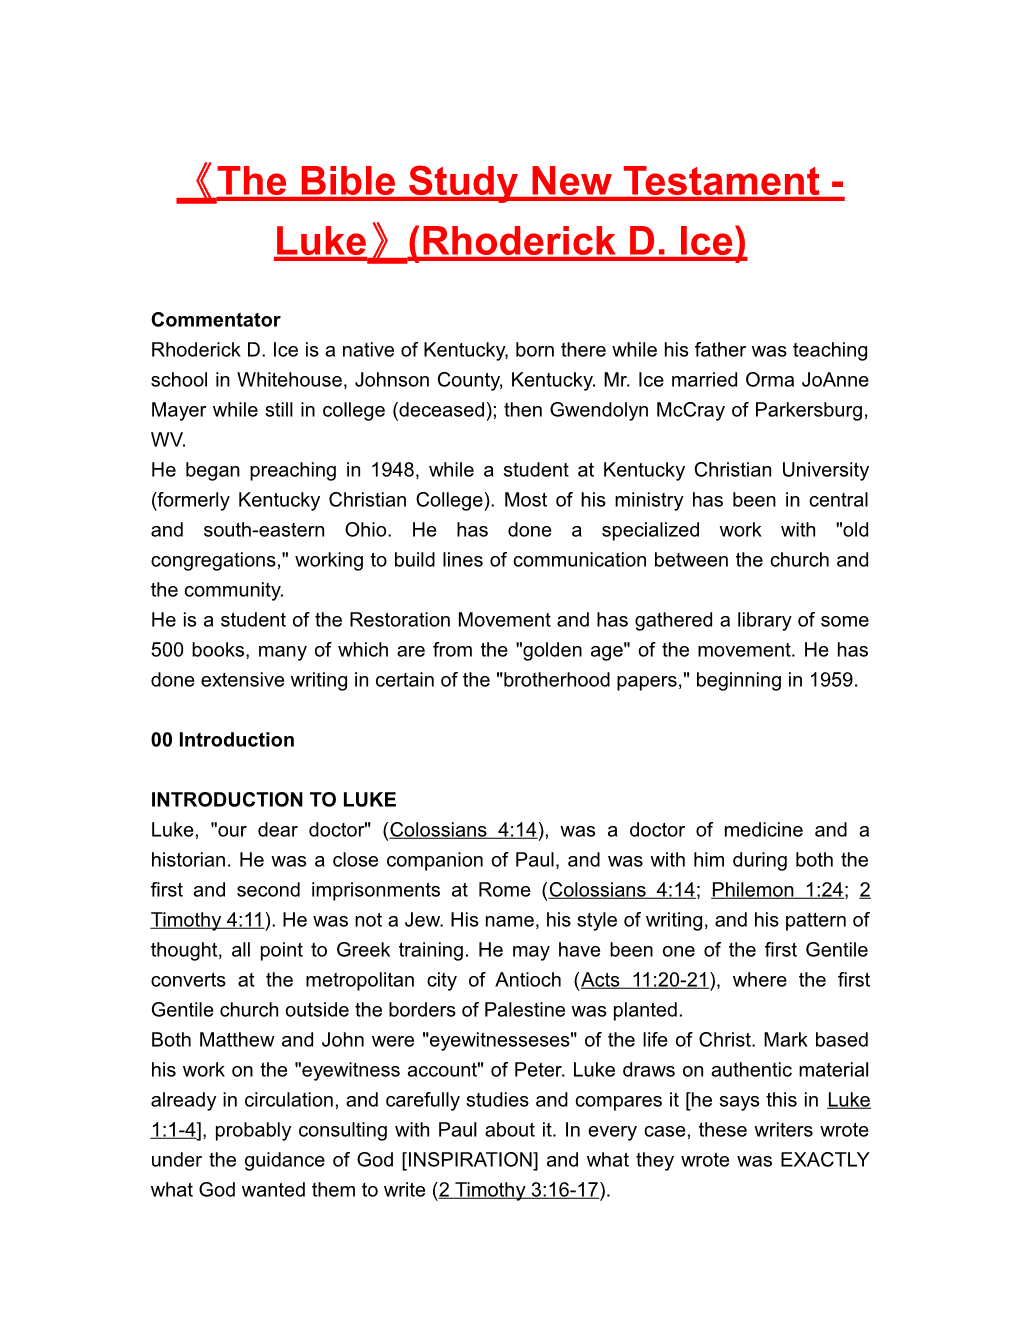 The Bible Study New Testament-Luke (Rhoderick D. Ice)